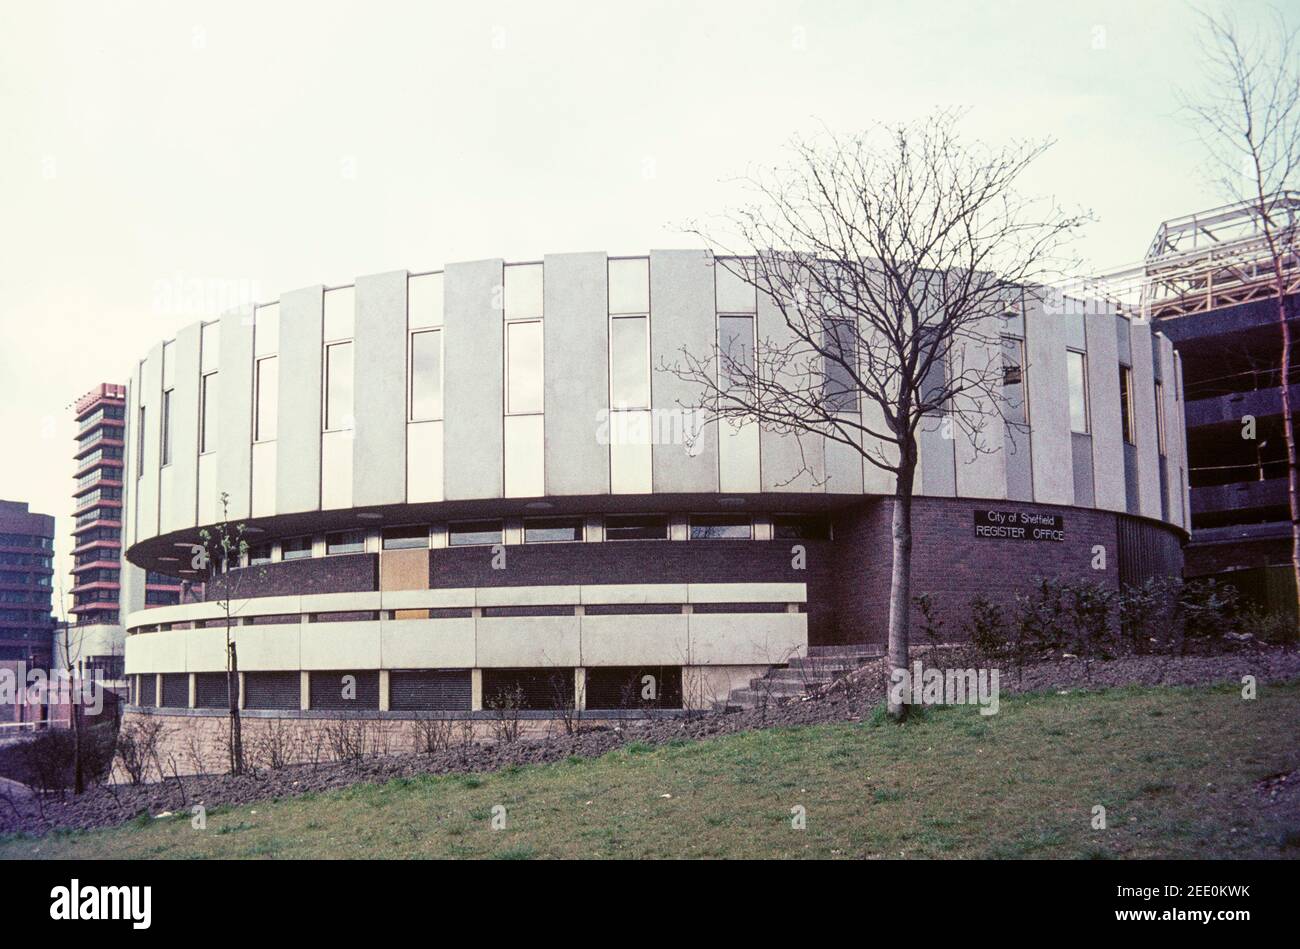 1975 Shefffield Bureau du registre de la ville de Sheffield l'architecture brutaliste a été surnommée « le gâteau de mariage » pour les naissances, les décès et les mariages. Il a été construit en 1973 et démoli en 2004. Sheffield City Centre South Yorkshire Angleterre GB Royaume-Uni Europe Banque D'Images